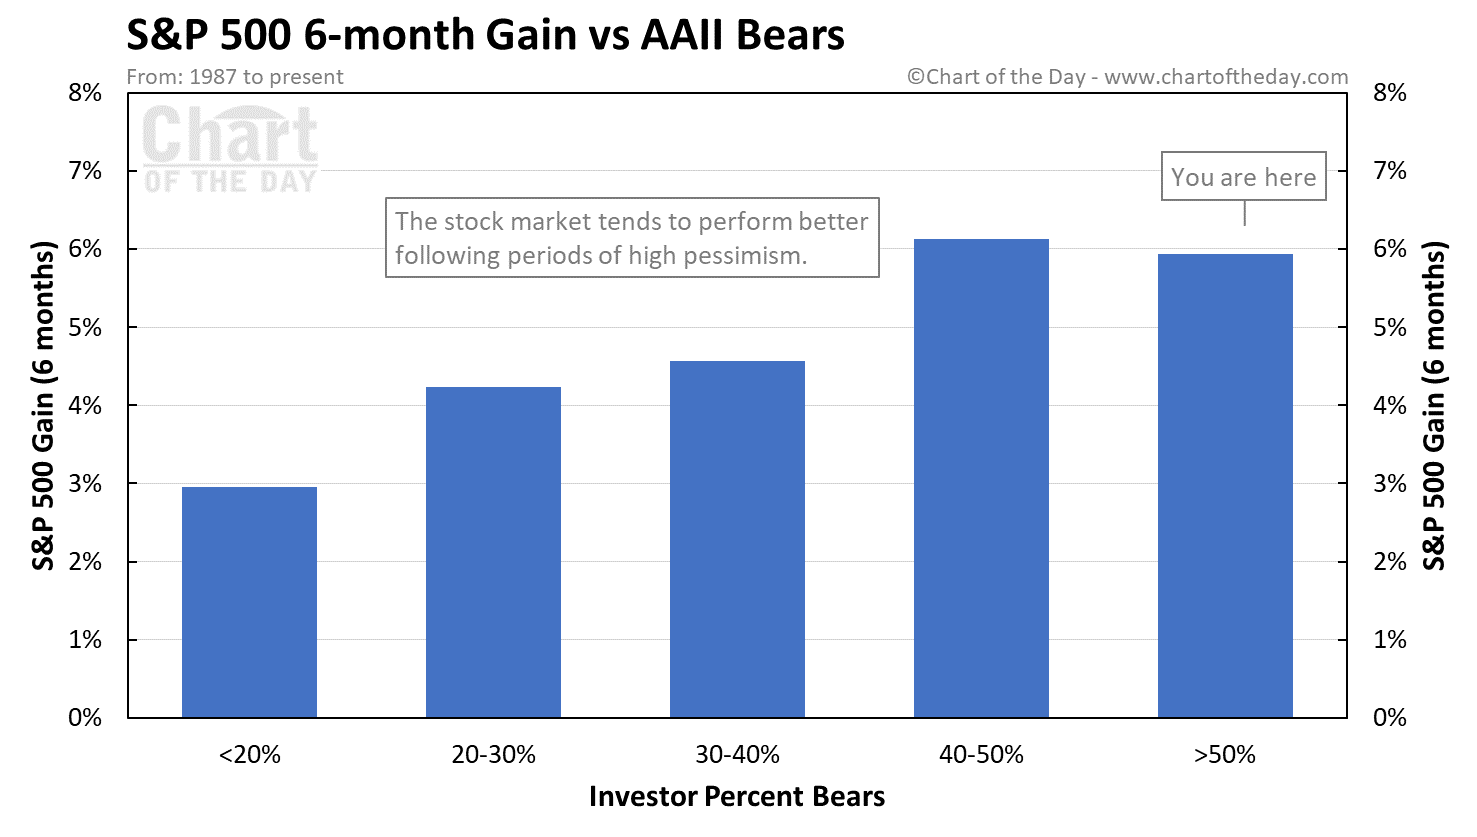 S&P 500 - výkonnost 6 měsíců po dosažení určité míry pesimismu v průzkumu AAII